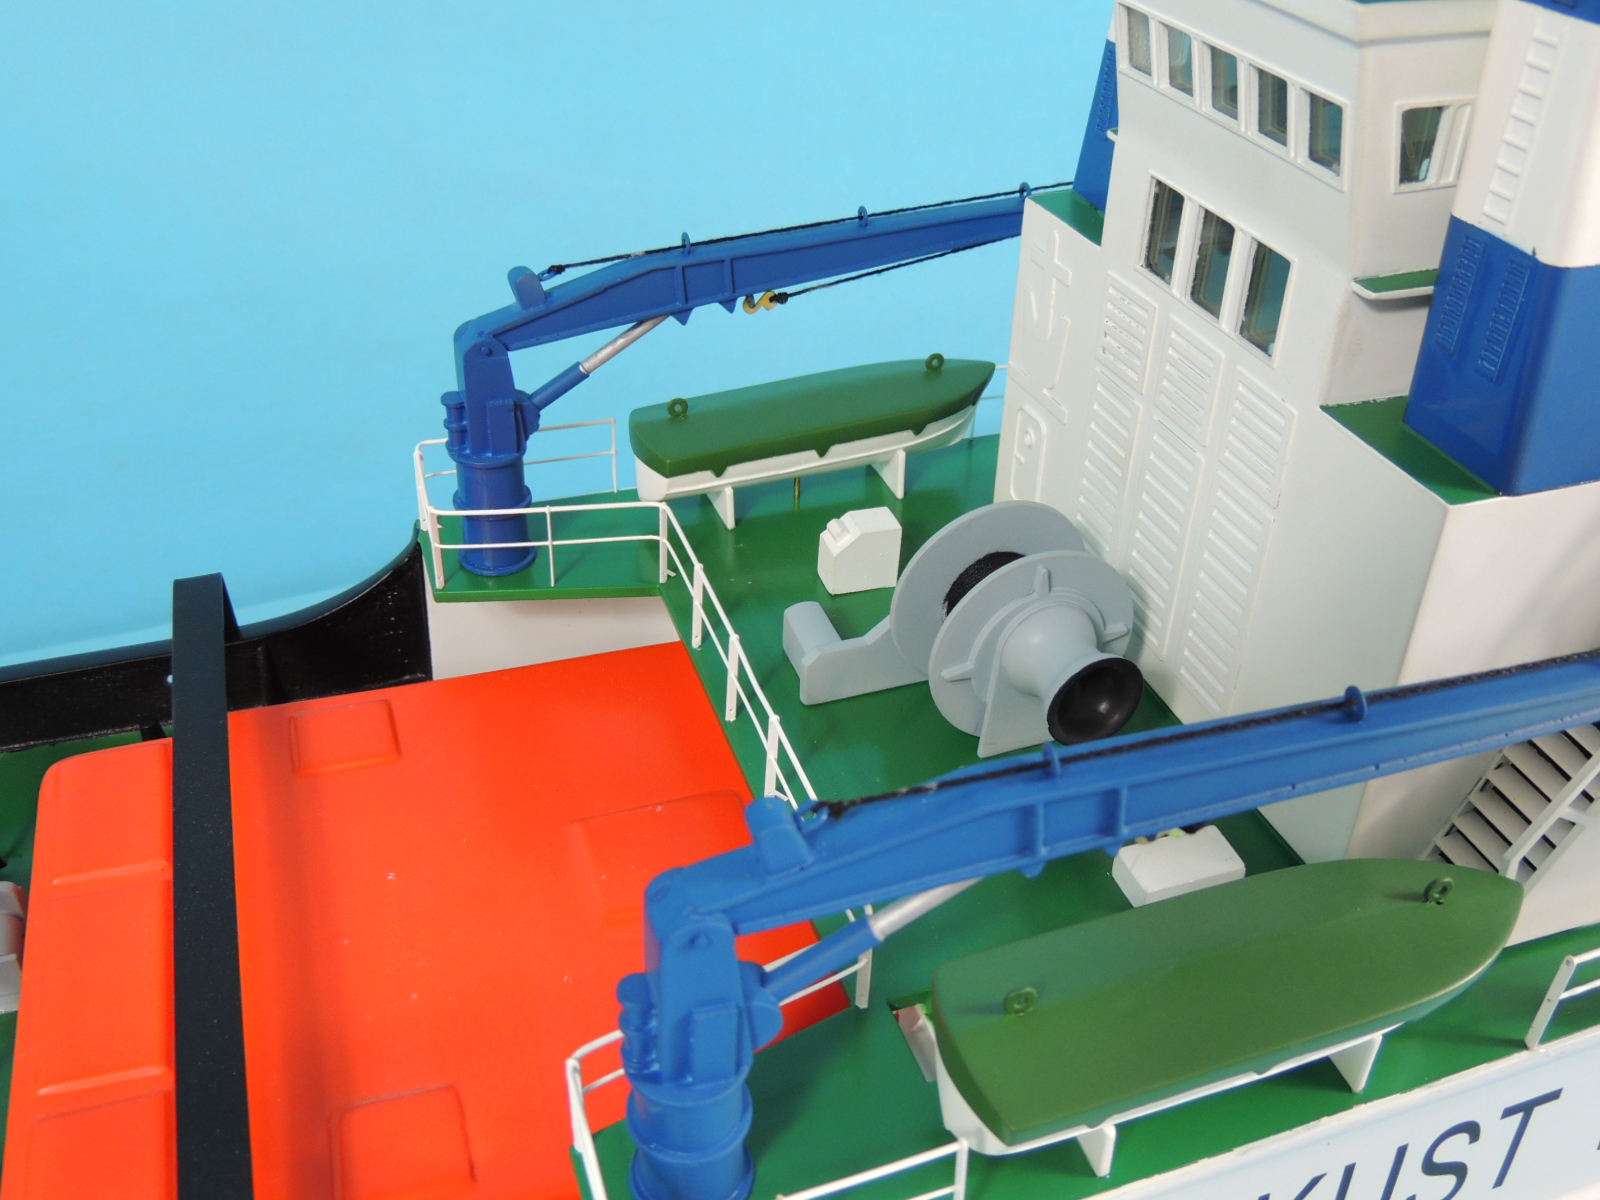 鹿特丹拖船 鹿特丹号拖轮,拖船收费标准,鹿特丹班轮 作者:航者行天下 6239 